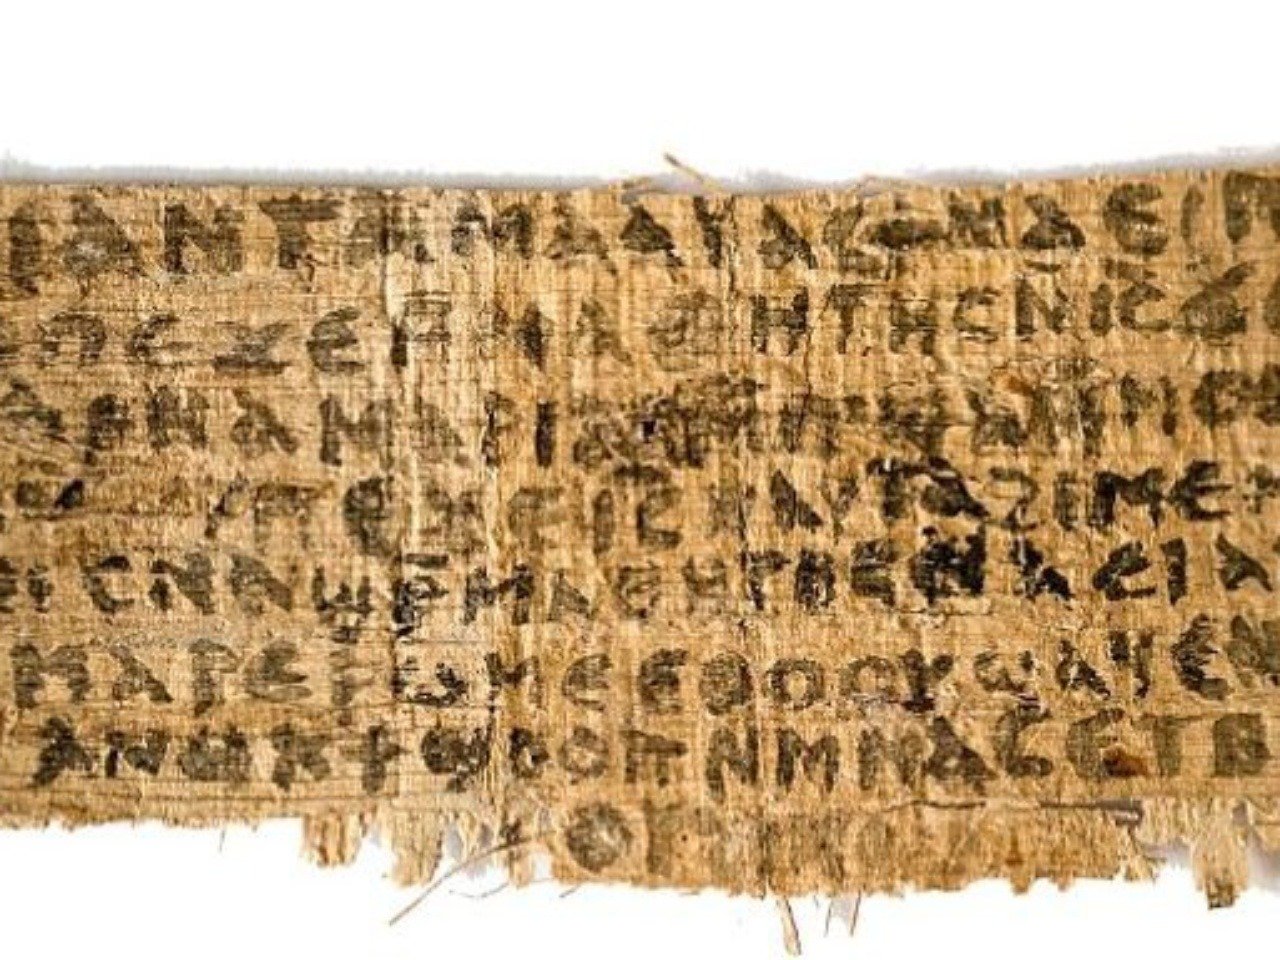 Nájdený papyrus